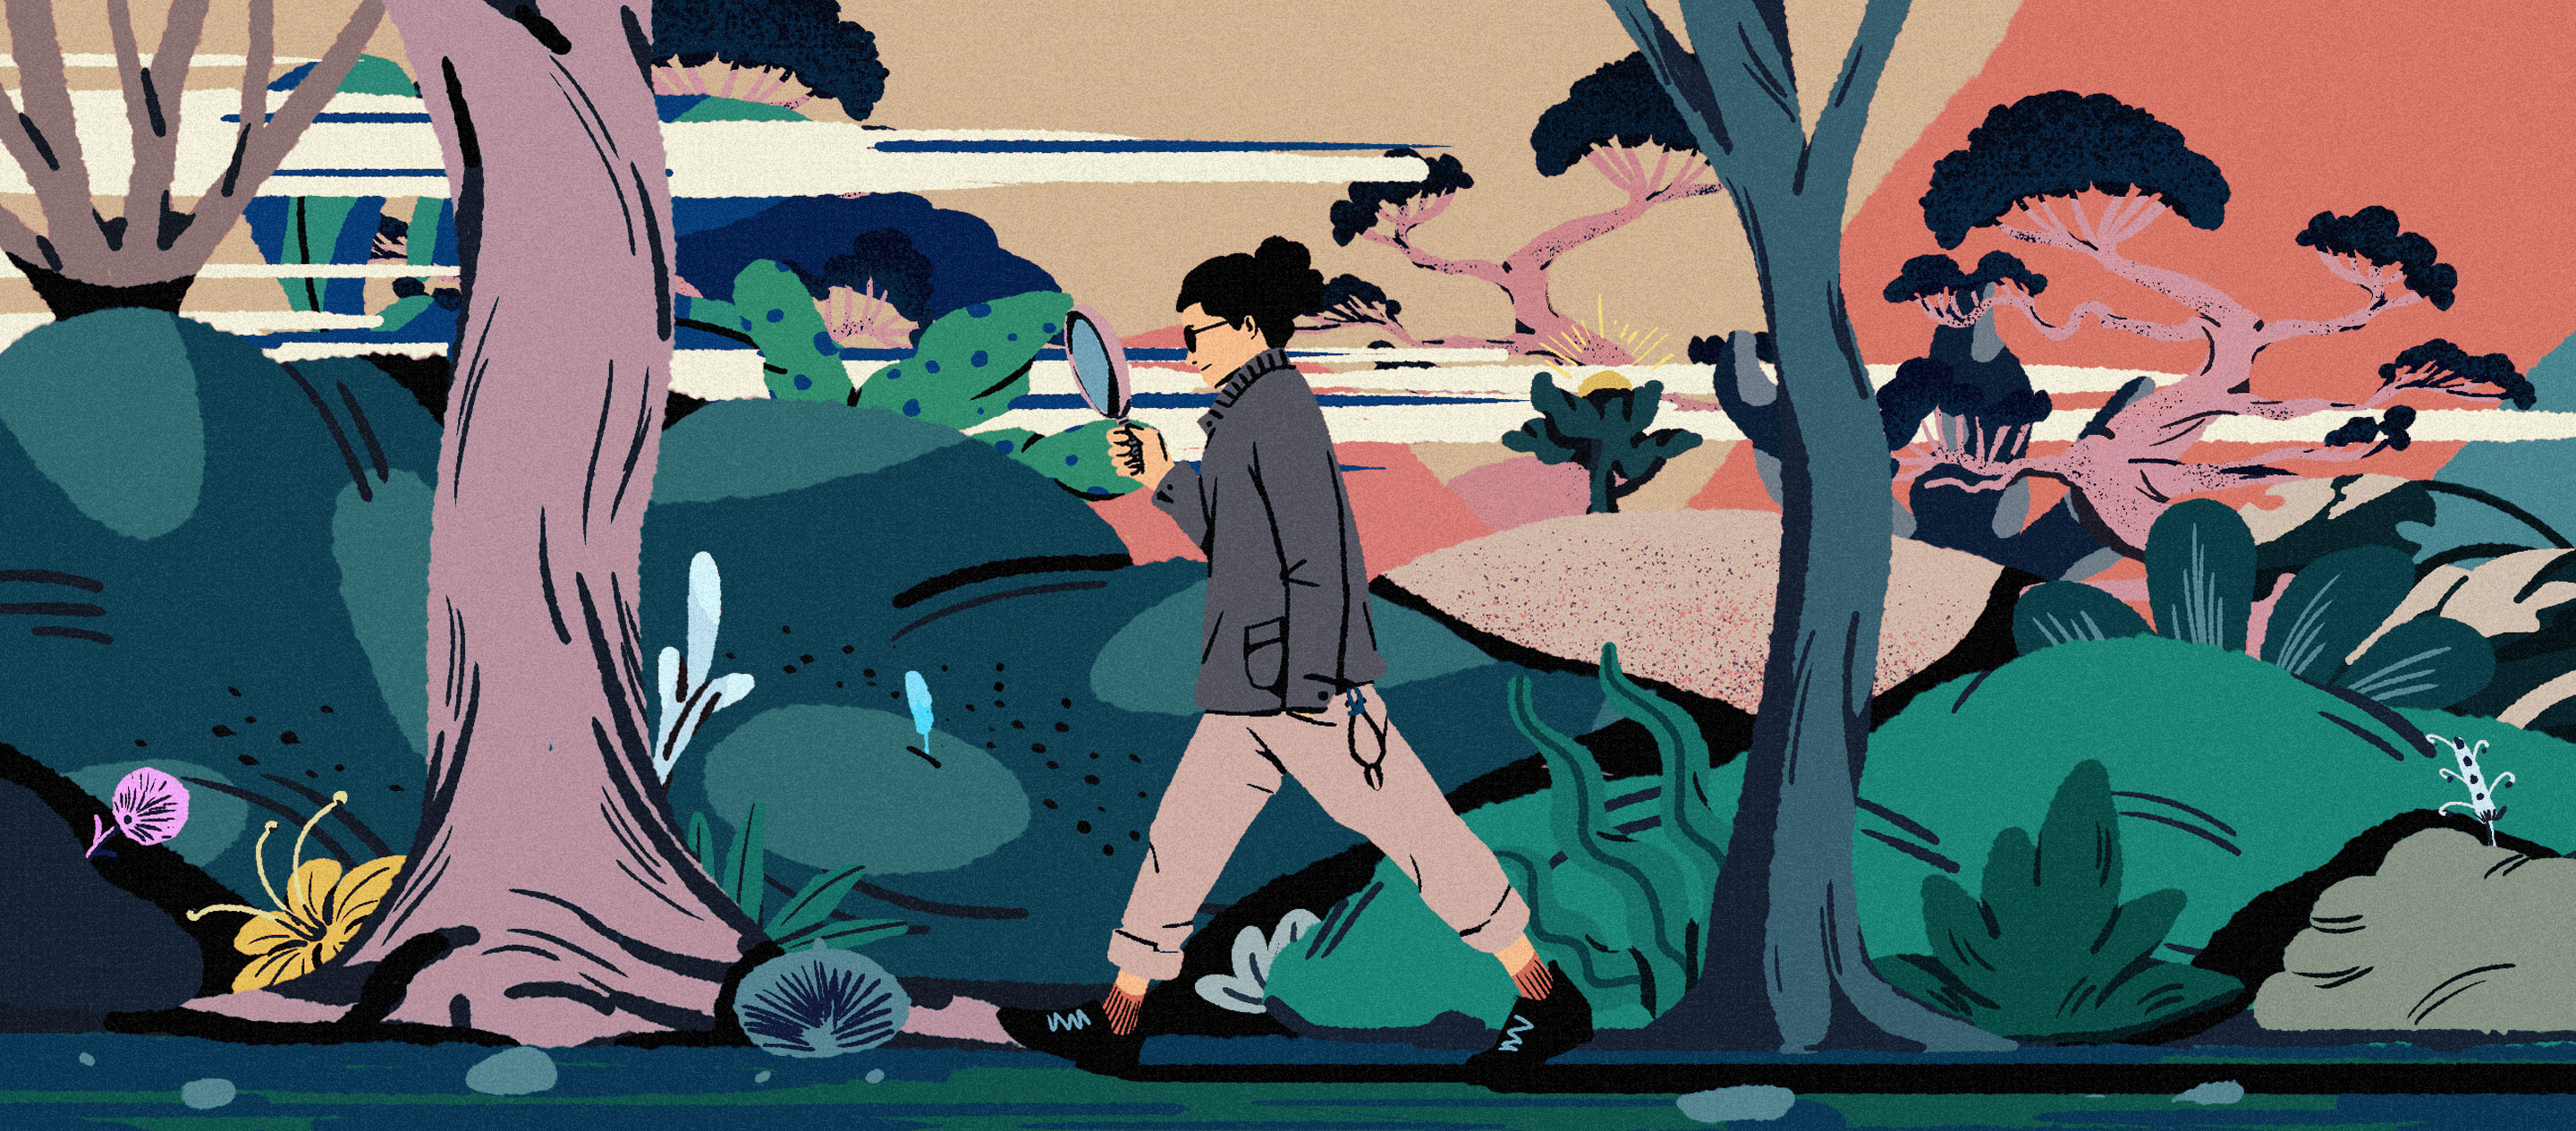 คุยกับ plant hunter หนุ่มญี่ปุ่นผู้ออกผจญภัยไปตามหาต้นไม้หายากจากทั่วโลก